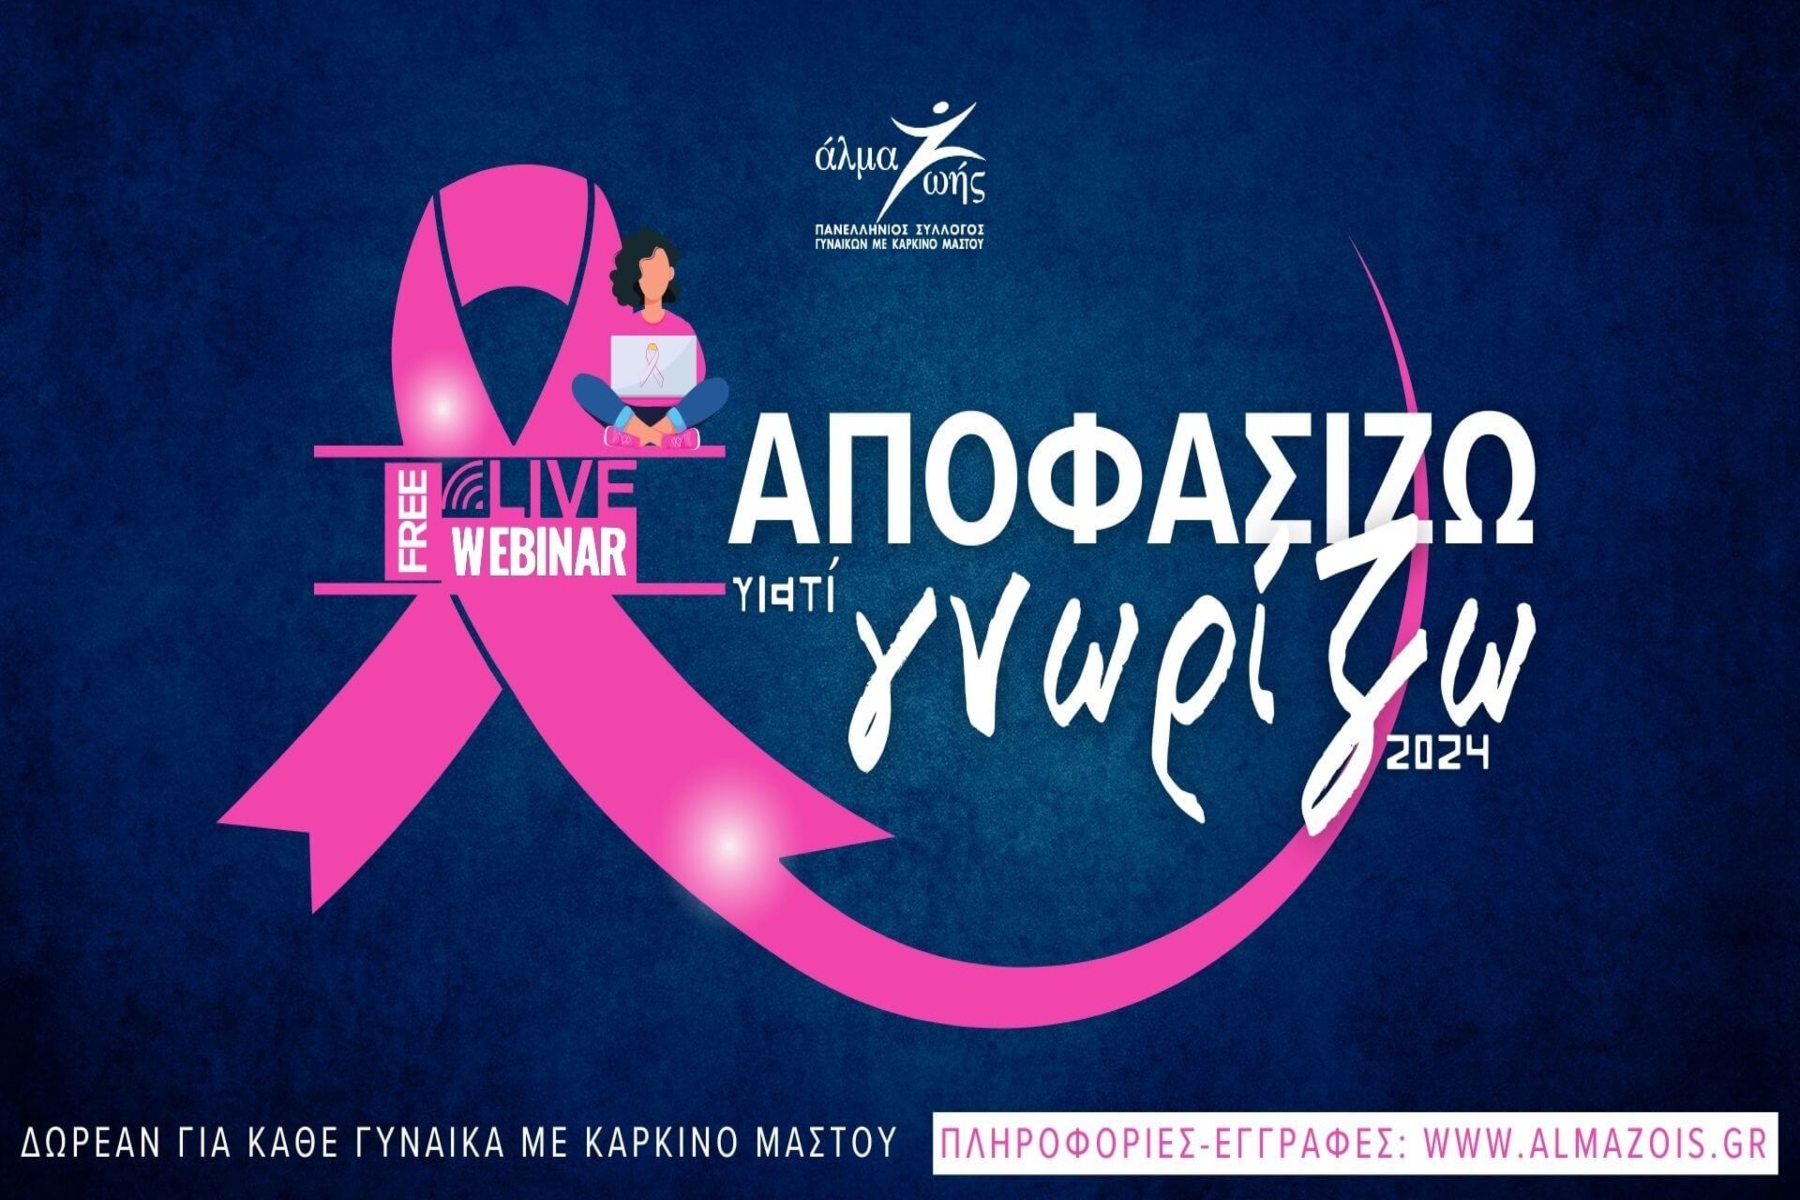 Αποφασίζω γιατί Γνωρίζω 2024: Δωρεάν εκπαιδευτικά webinars για γυναίκες με καρκίνο μαστού